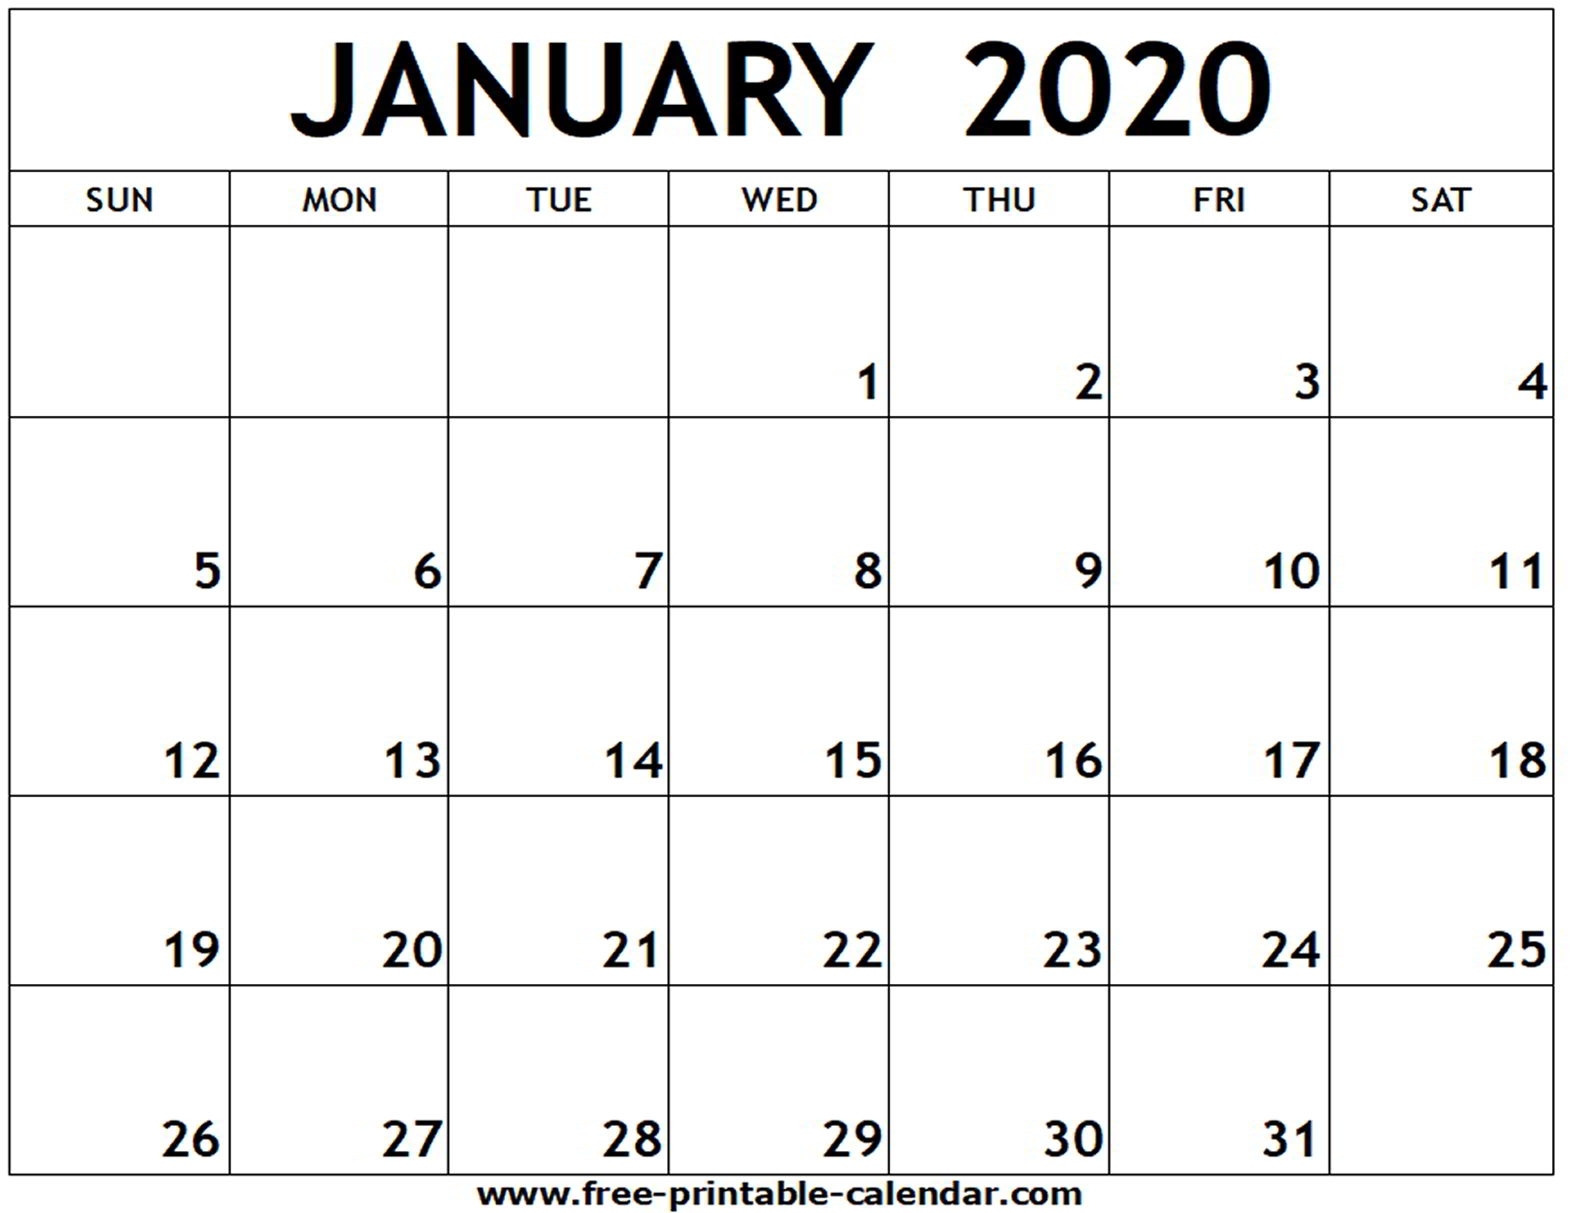 January 2020 Printable Calendar - Free-Printable-Calendar Incredible Canada January 2020 Printable Calendar